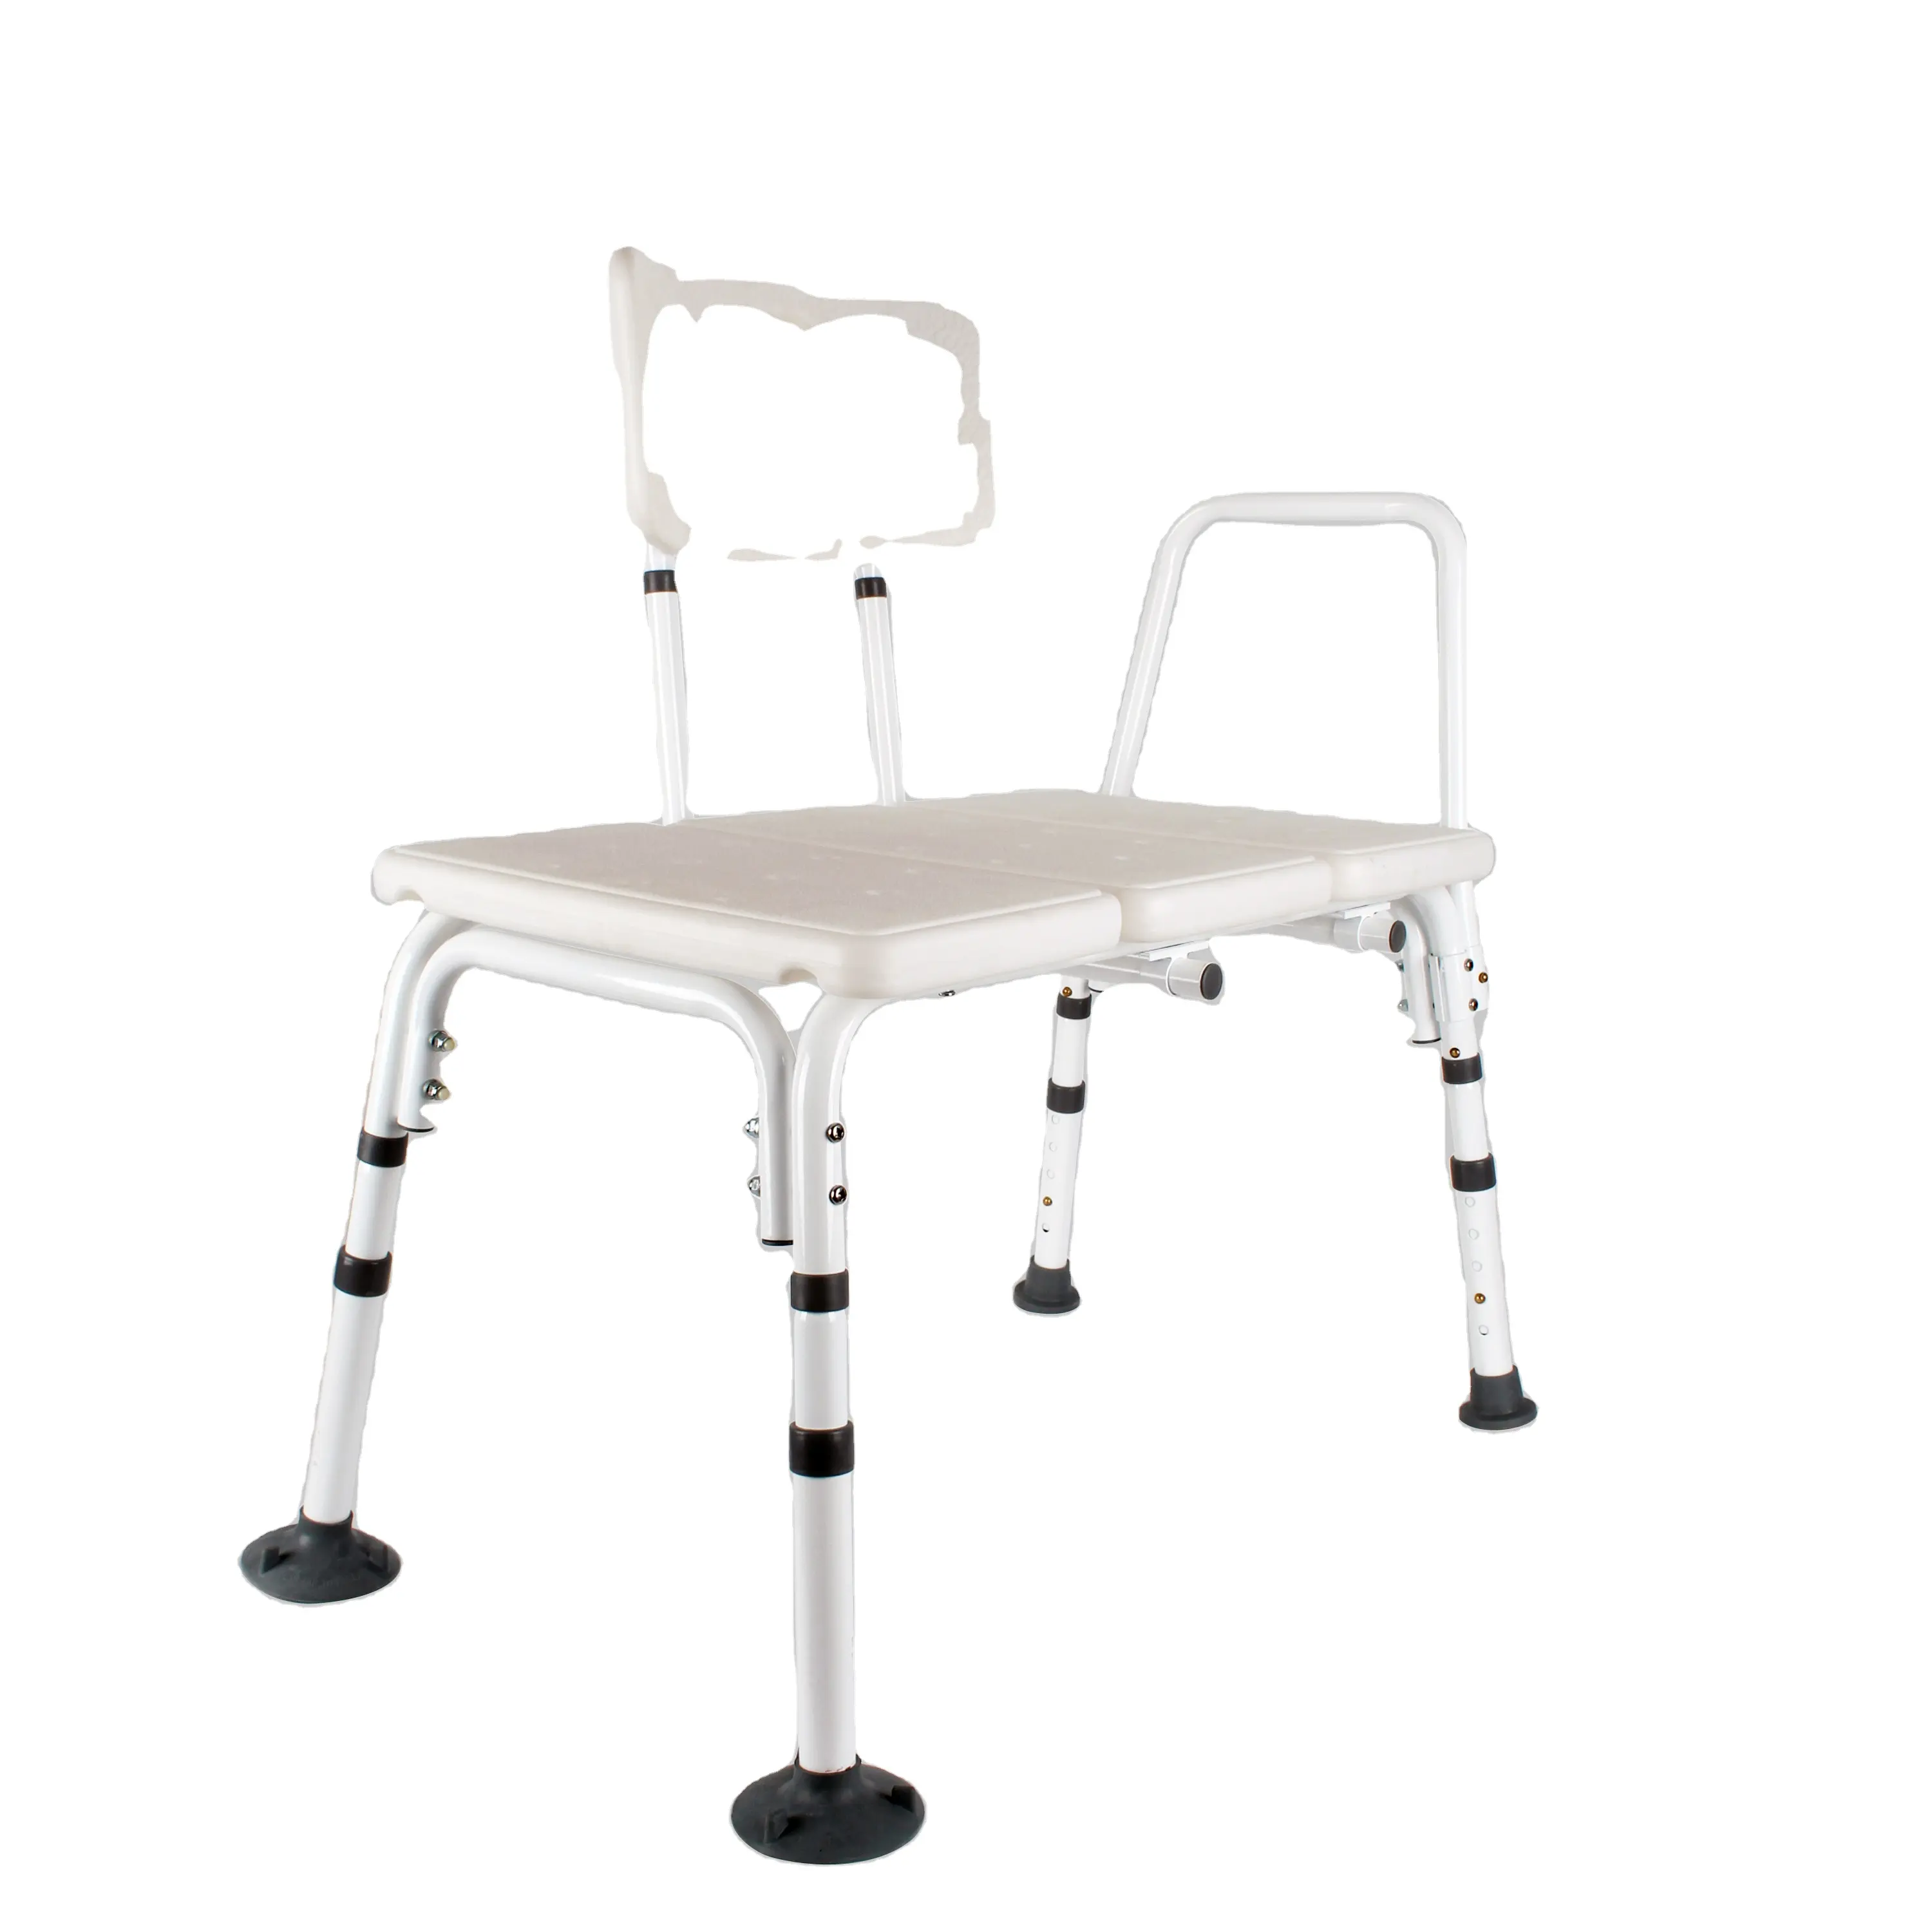 Suprimentos para cuidados de saúde, cadeiras ajustáveis de alumínio para assistência ao banheiro e banho, cadeiras para idosos